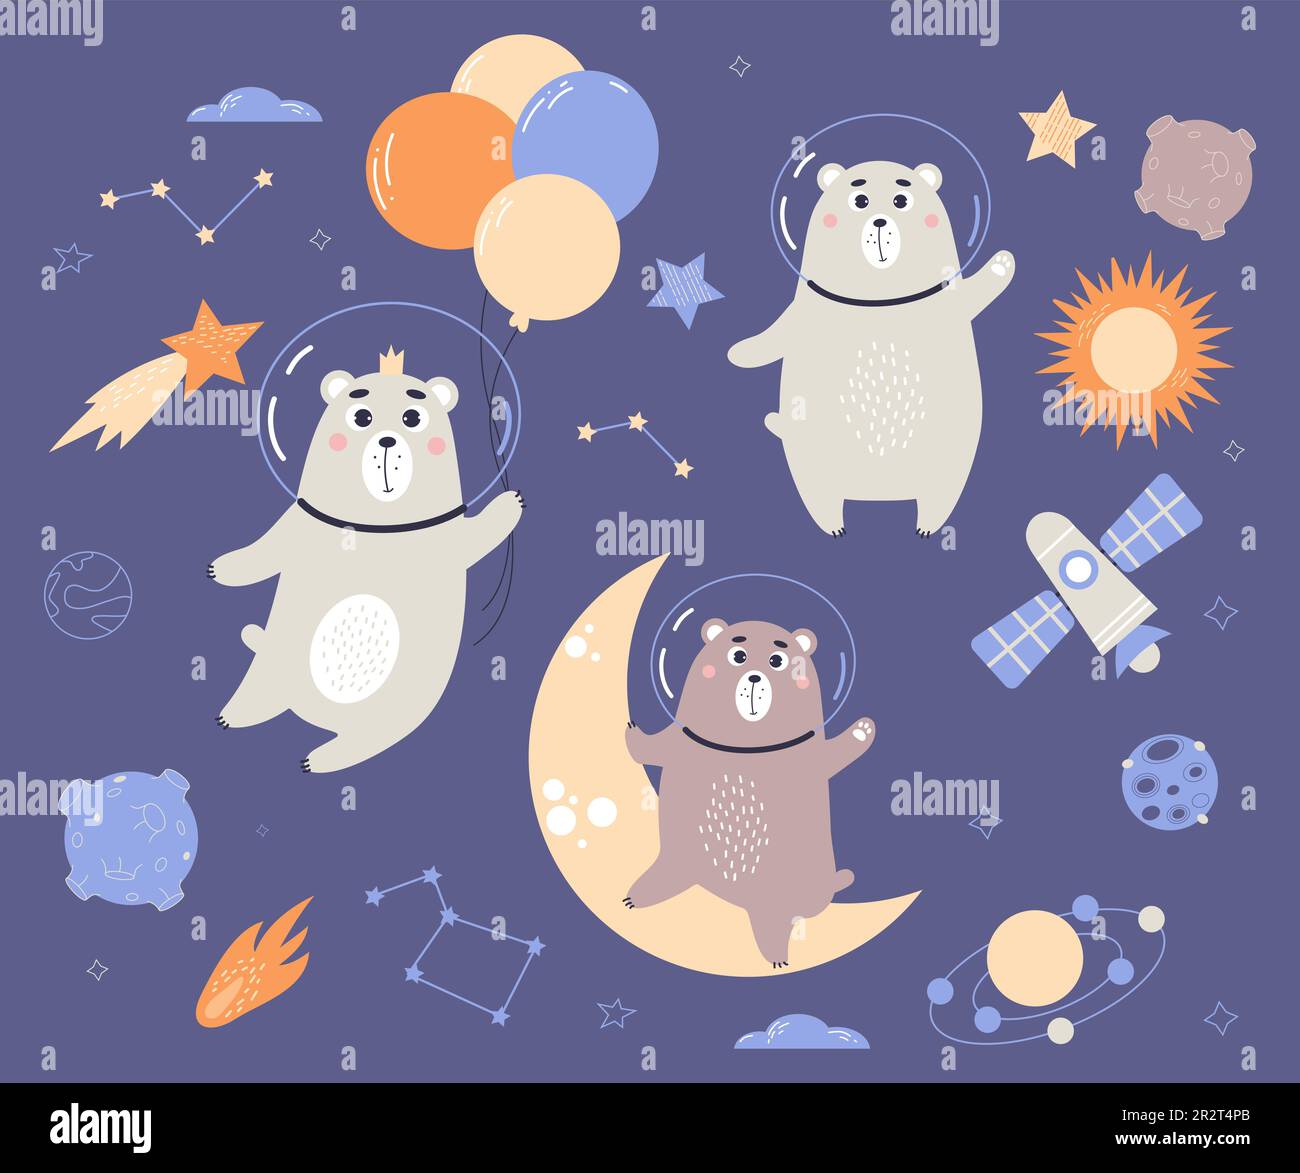 Stell niedliche Tierastronauten auf. Lustige Raumbären auf dem Mond mit Ballons, Planeten, Sternbilder und Meteoriten. Vektordarstellung im flachen Cartoon-Stil Stock Vektor